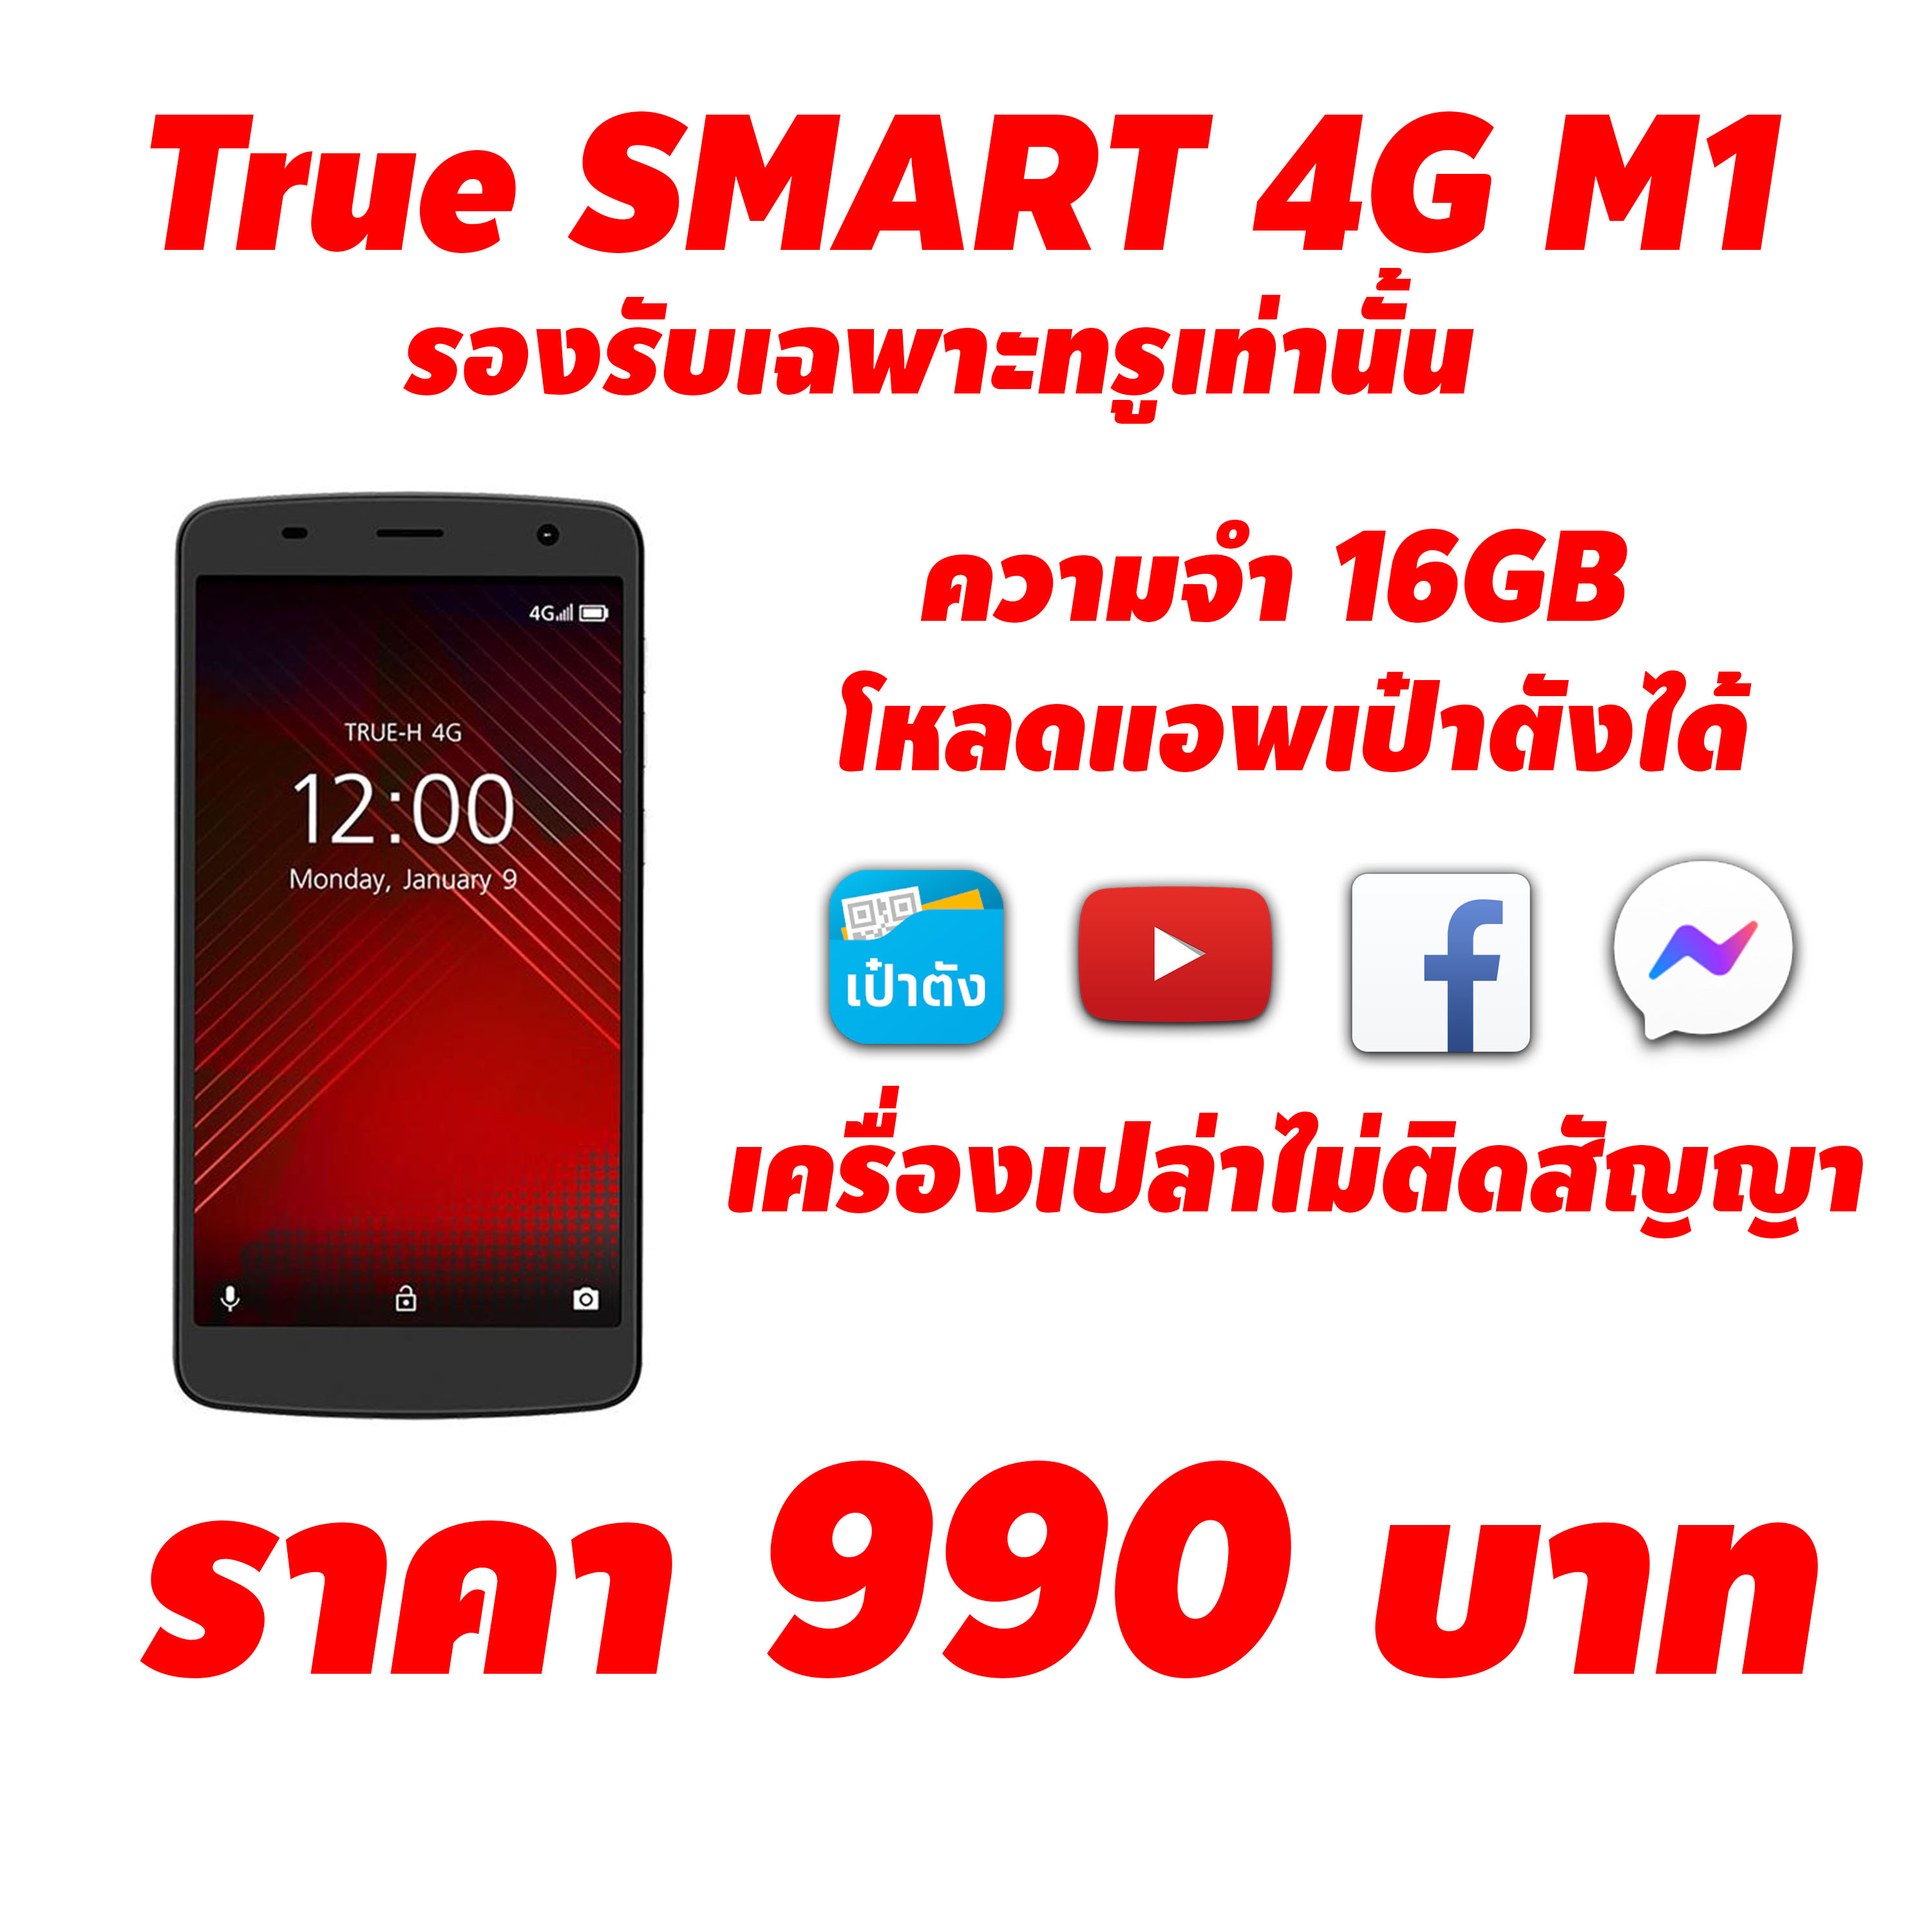 True SMART 4G M1 (รองรับเฉพาะซิมทรูเท่านั้น) ไม่ติดสัญญา